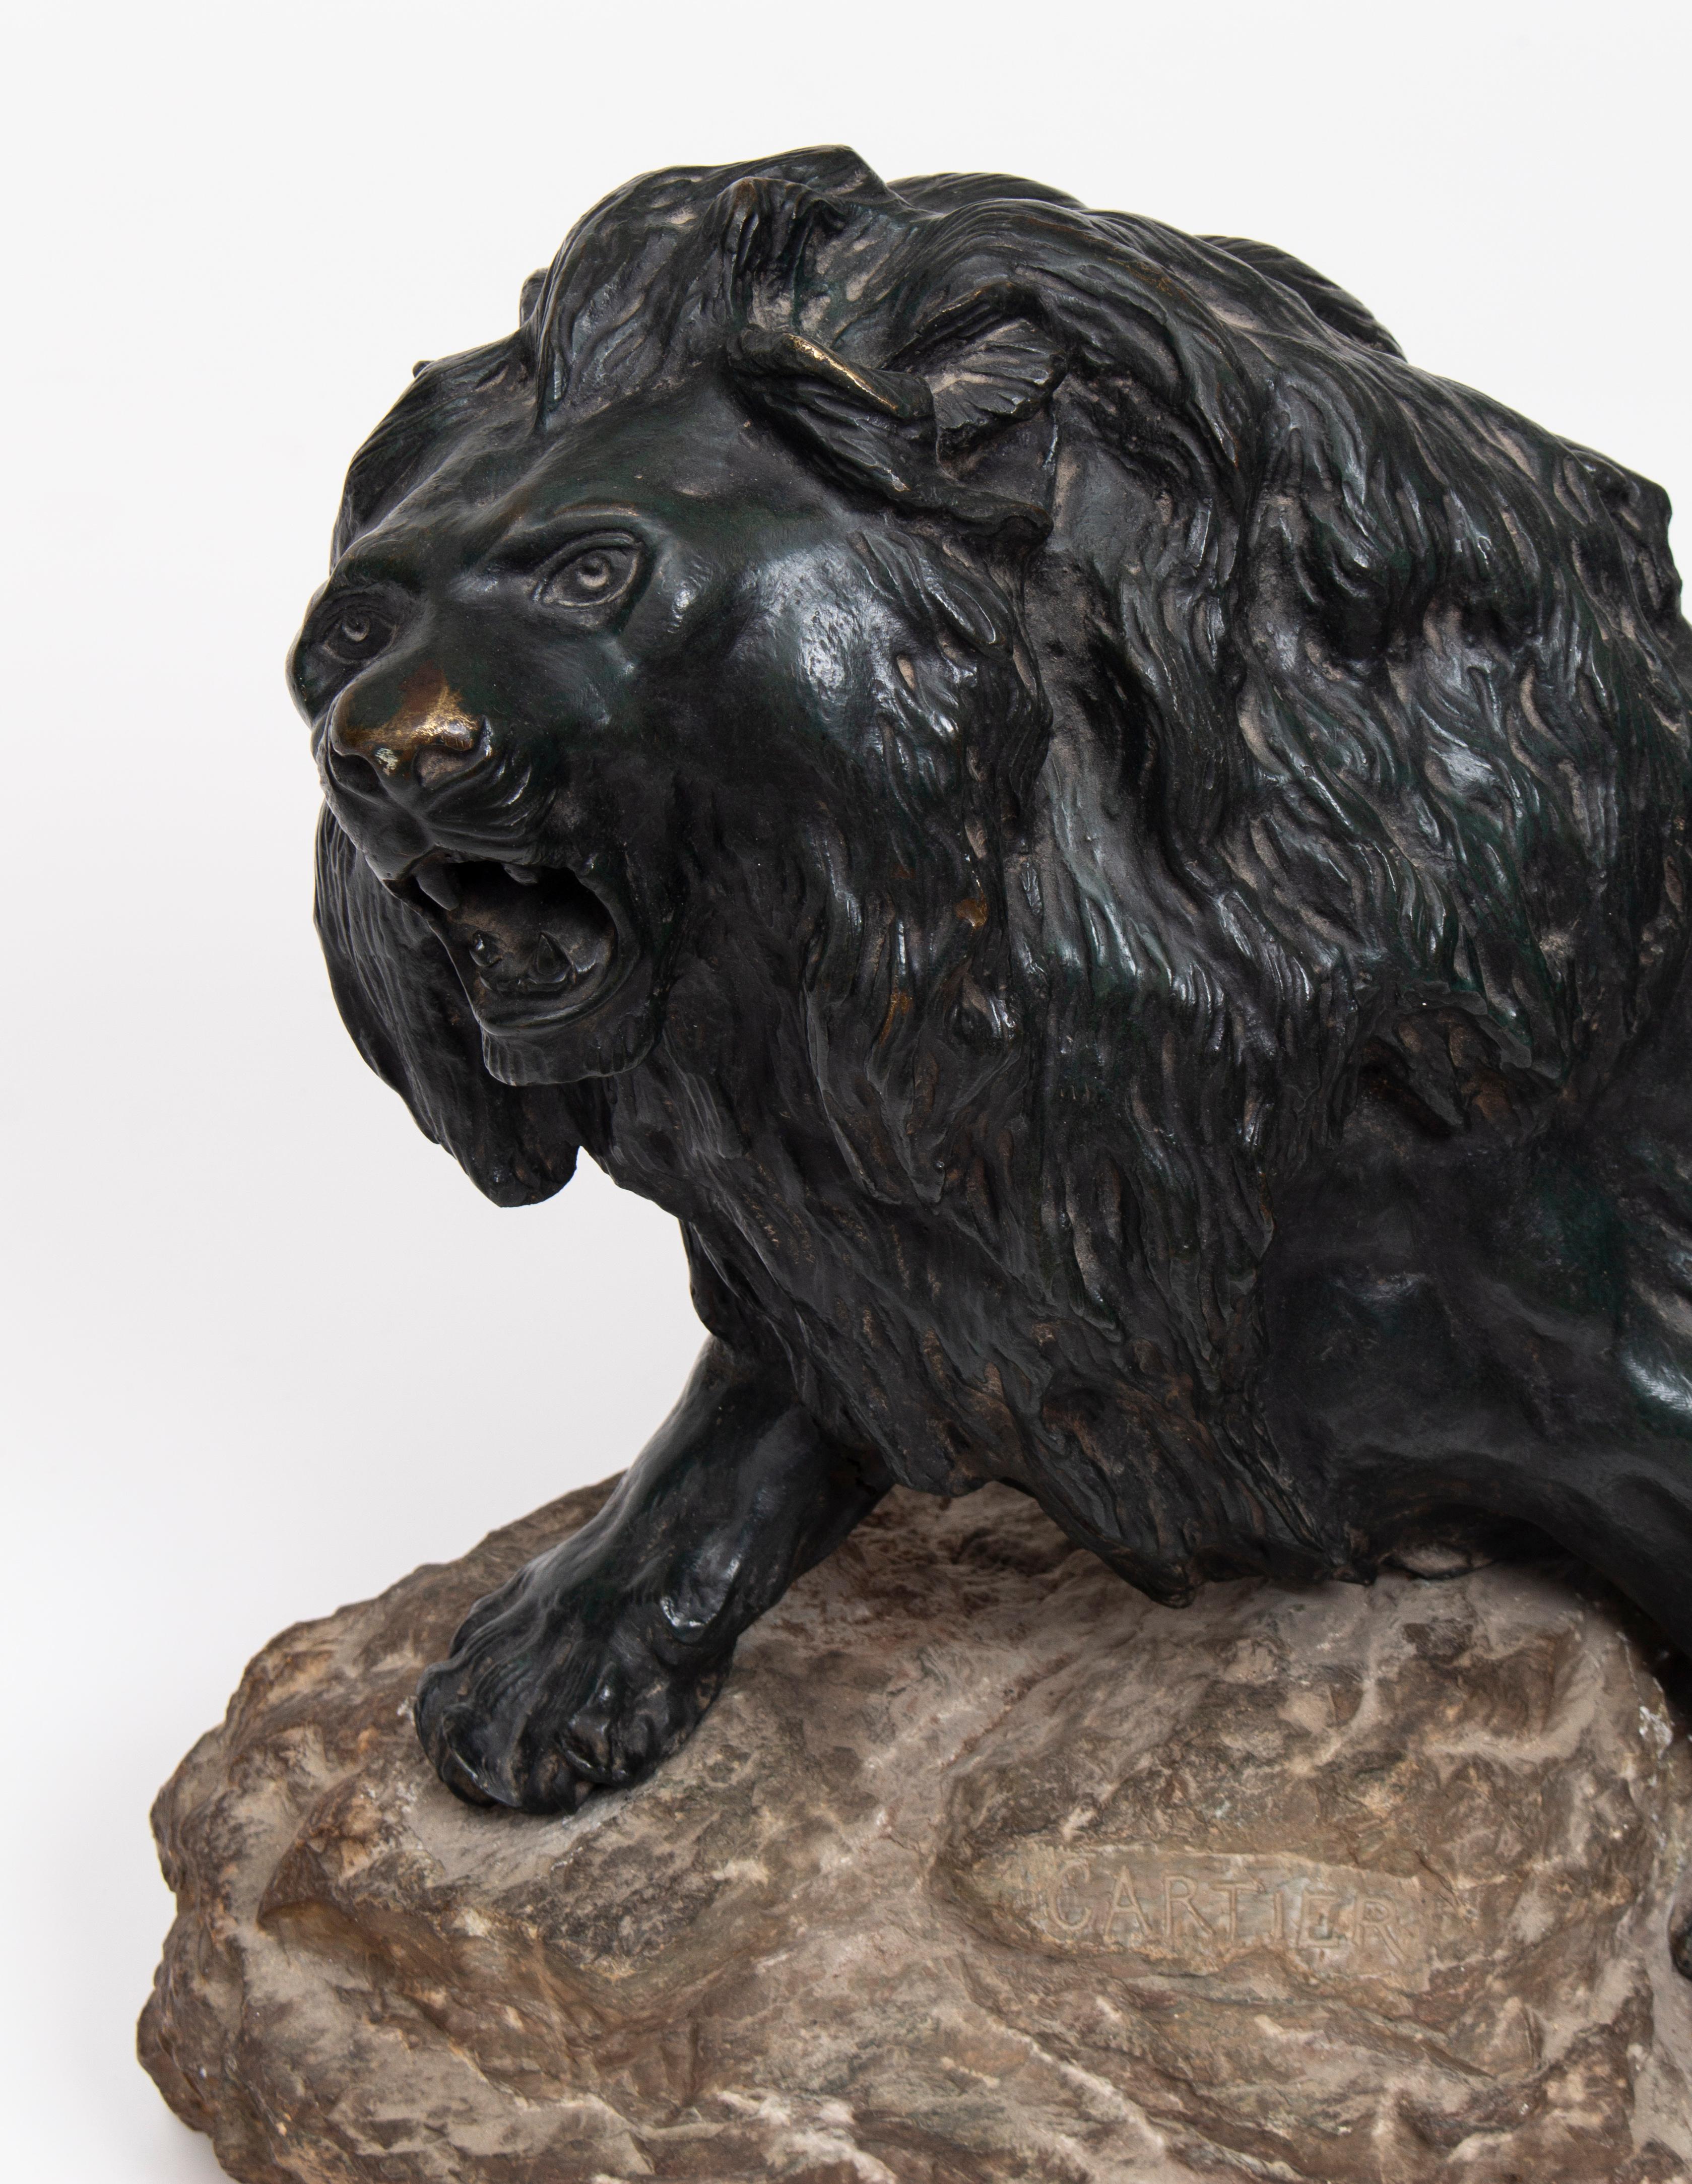 Thomas François Cartier, né le 3 janvier 1879 à Marseille et décédé le 27 décembre 1943, est un sculpteur français célèbre pour ses représentations magistrales d'animaux, en particulier de lions. Sa prouesse artistique résidait dans sa capacité à